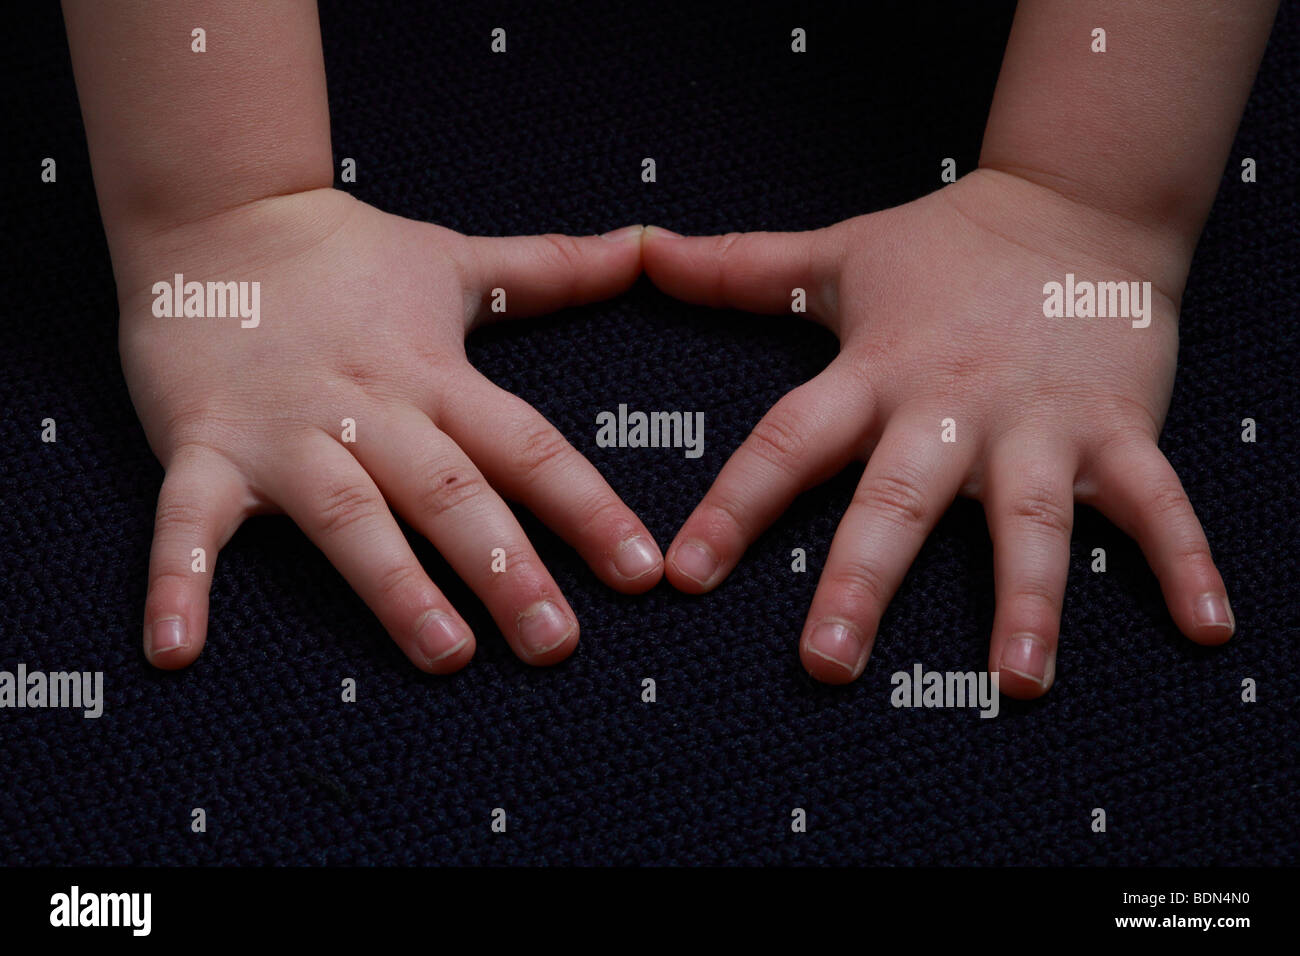 Part eines Kindes Main d'un enfant 5 doigts 5 Doigts pouce Handfläche Fingerkuppen Daumen mains doigt doigt-nails Fingersp Banque D'Images